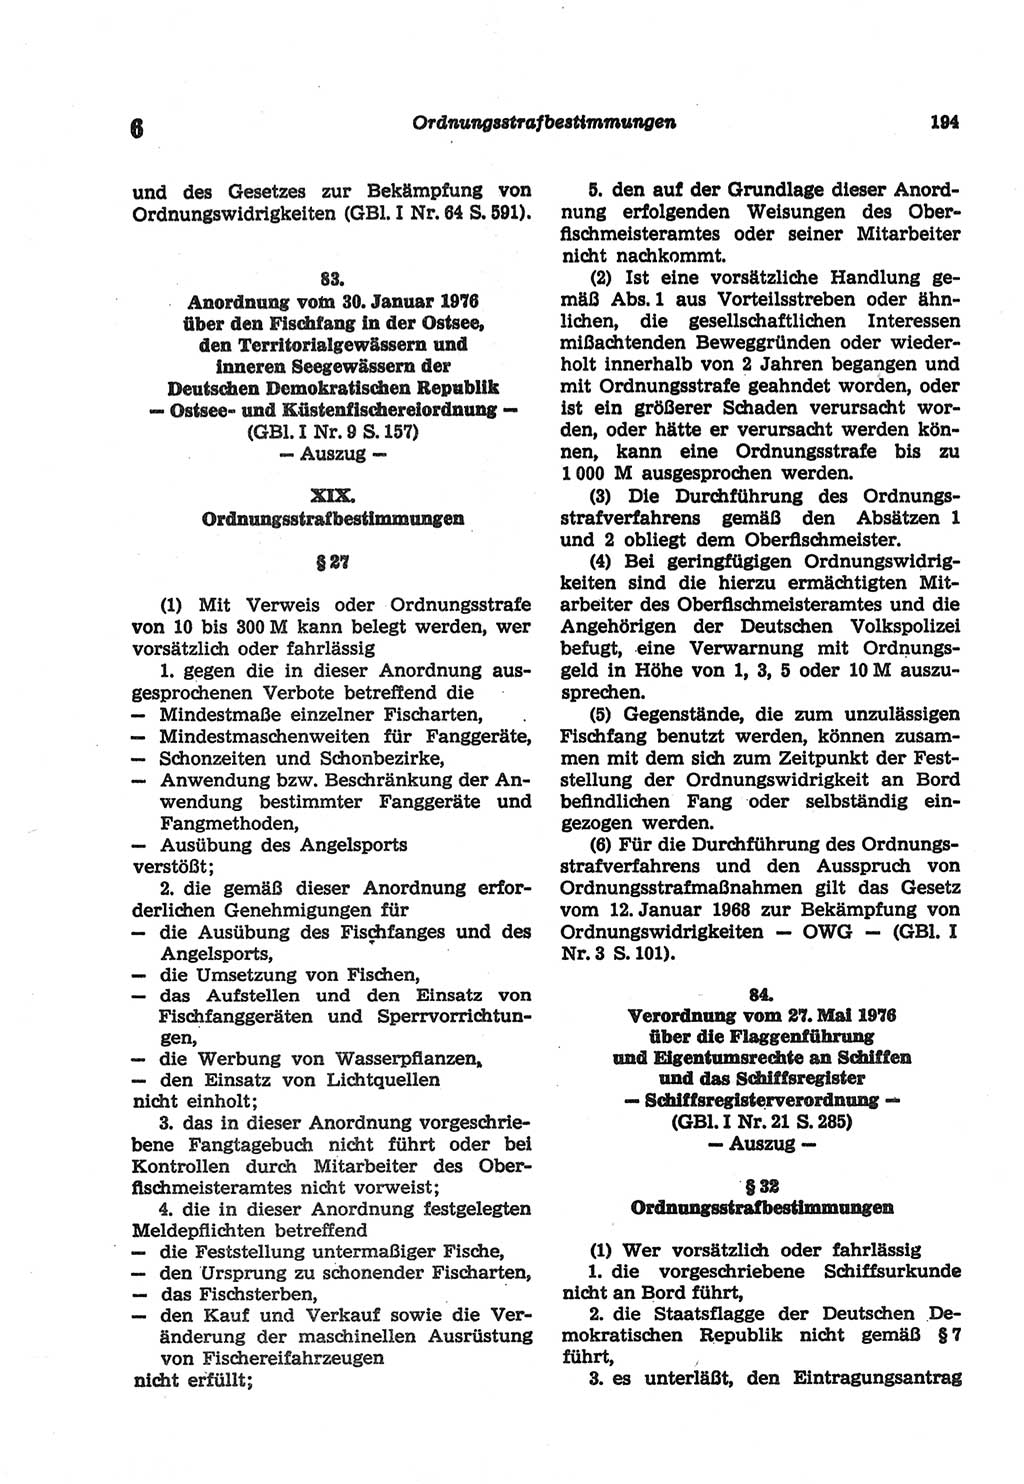 Strafgesetzbuch (StGB) der Deutschen Demokratischen Republik (DDR) und angrenzende Gesetze und Bestimmungen 1977, Seite 194 (StGB DDR Ges. Best. 1977, S. 194)